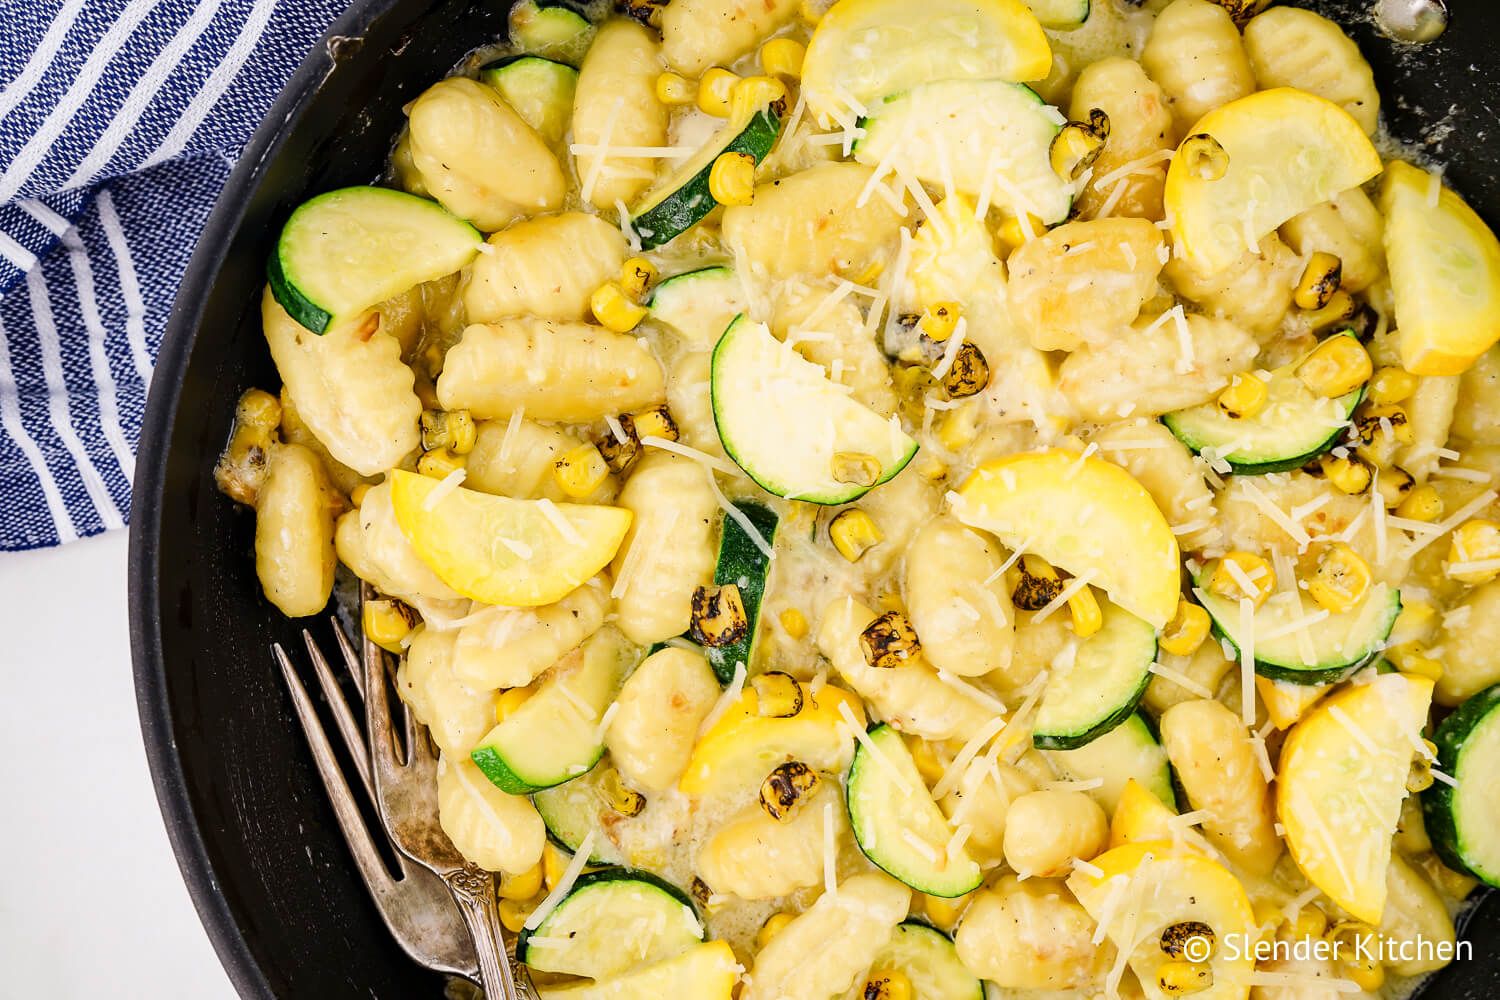 Potato gnocchi recipe in a skillet with zucchini, summer squash, and corn with a blue napkin.